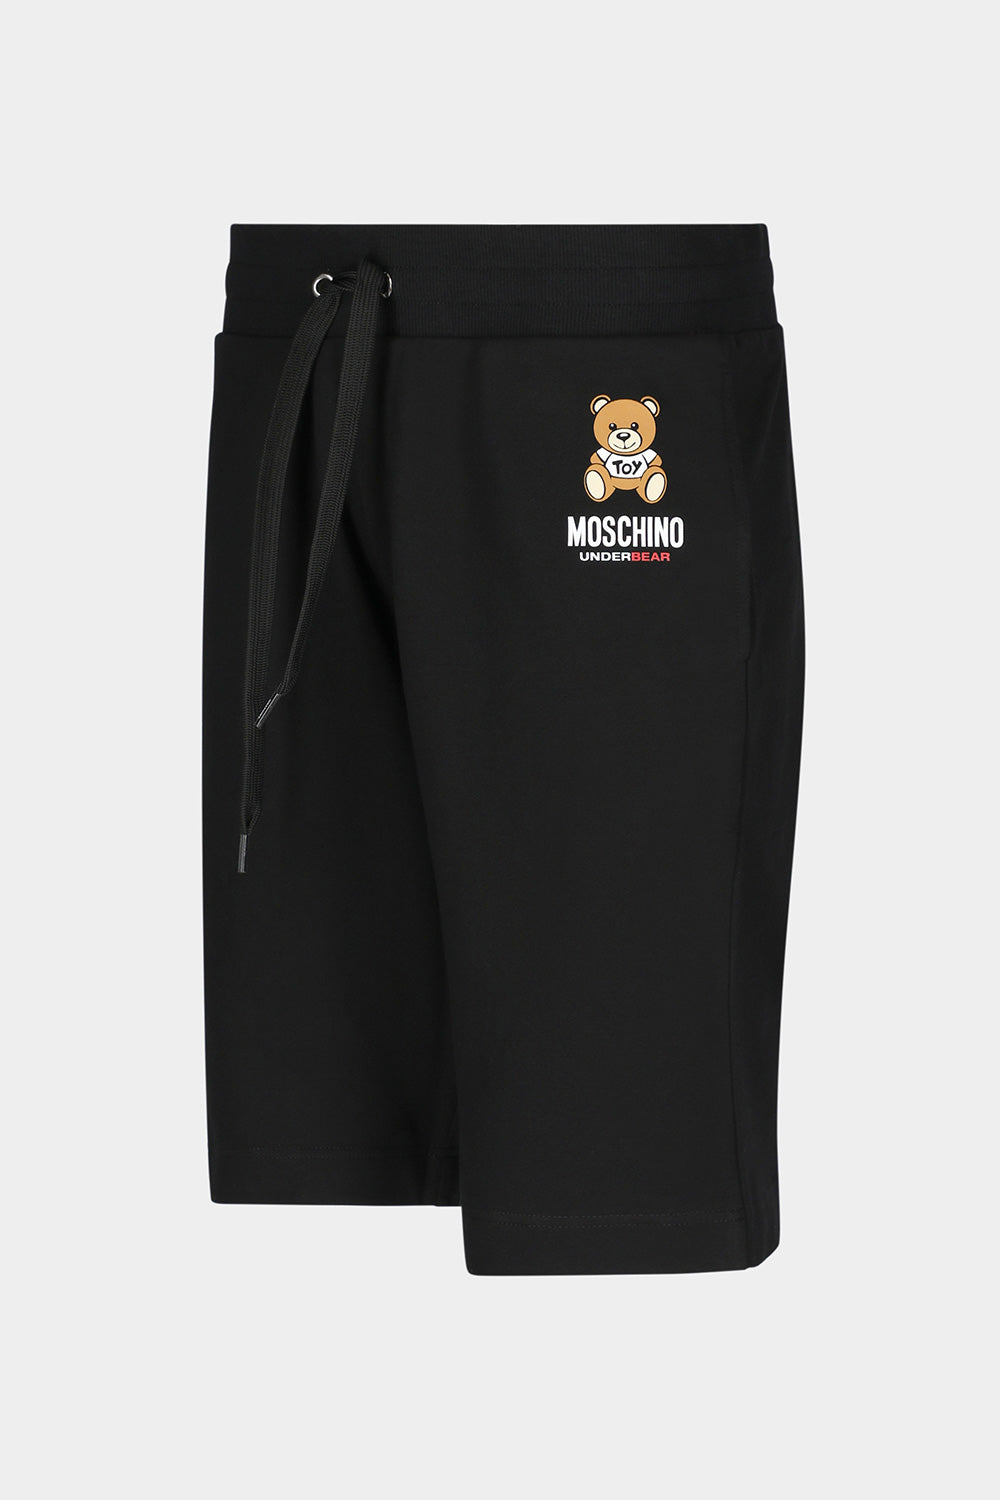 מכנסי ברמודה לגברים לוגו דובי MOSCHINO Vendome online | ונדום .